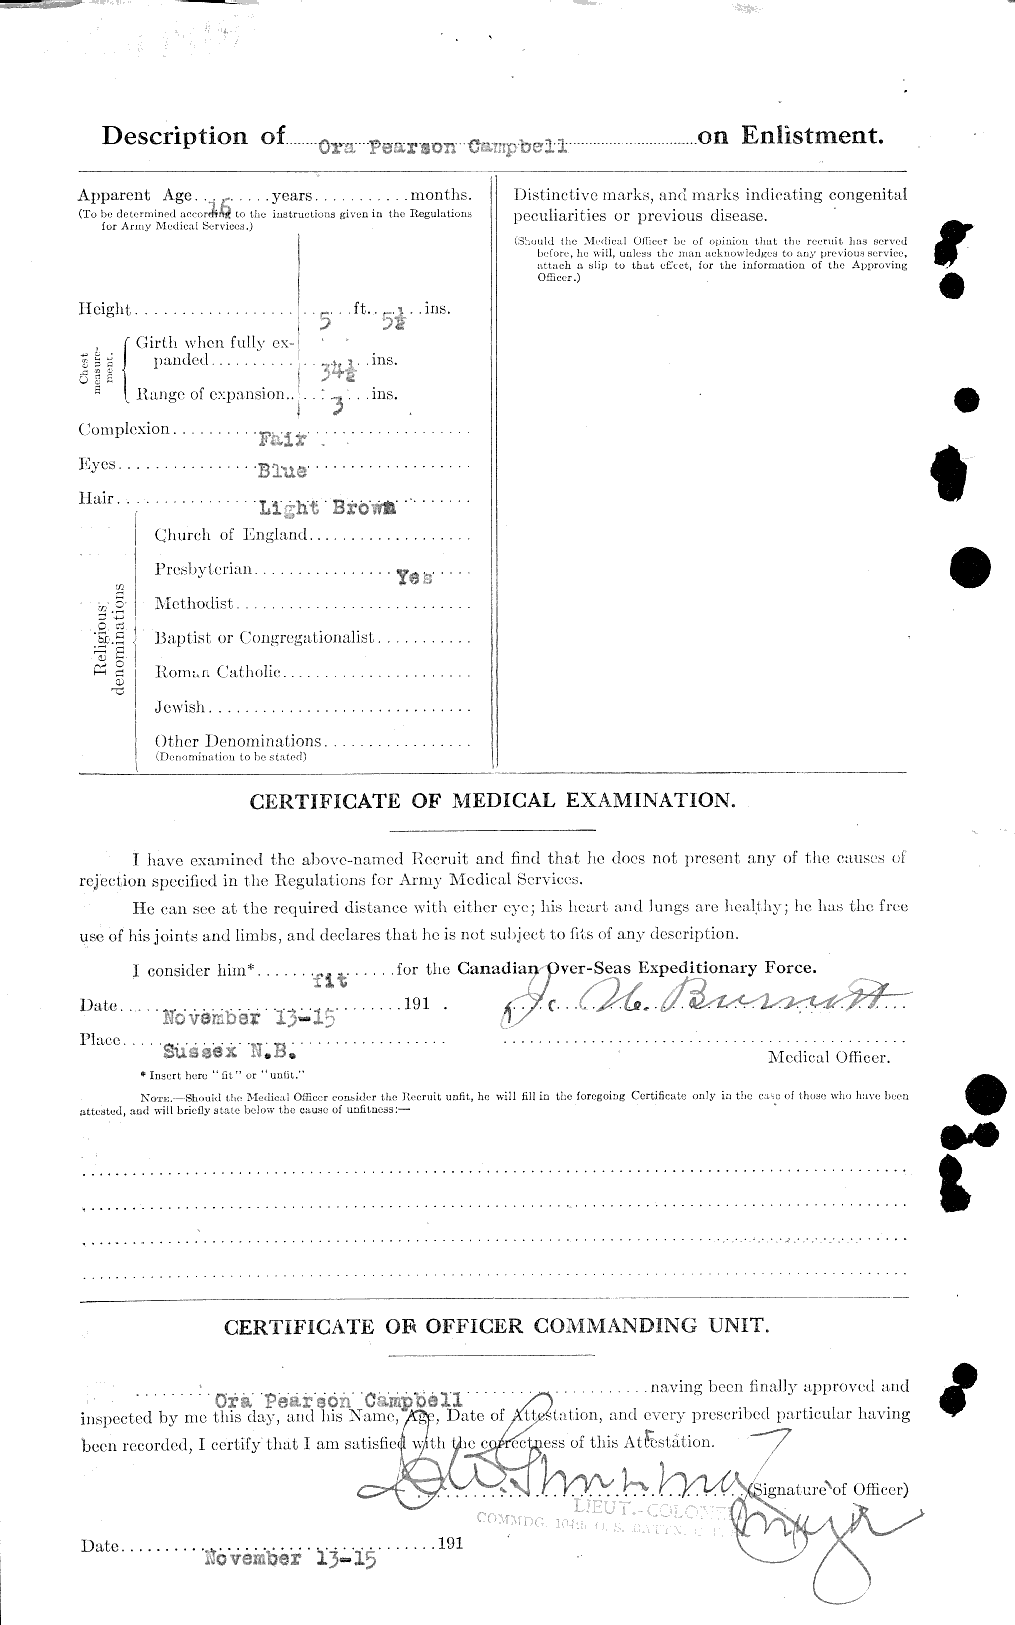 Dossiers du Personnel de la Première Guerre mondiale - CEC 006983b